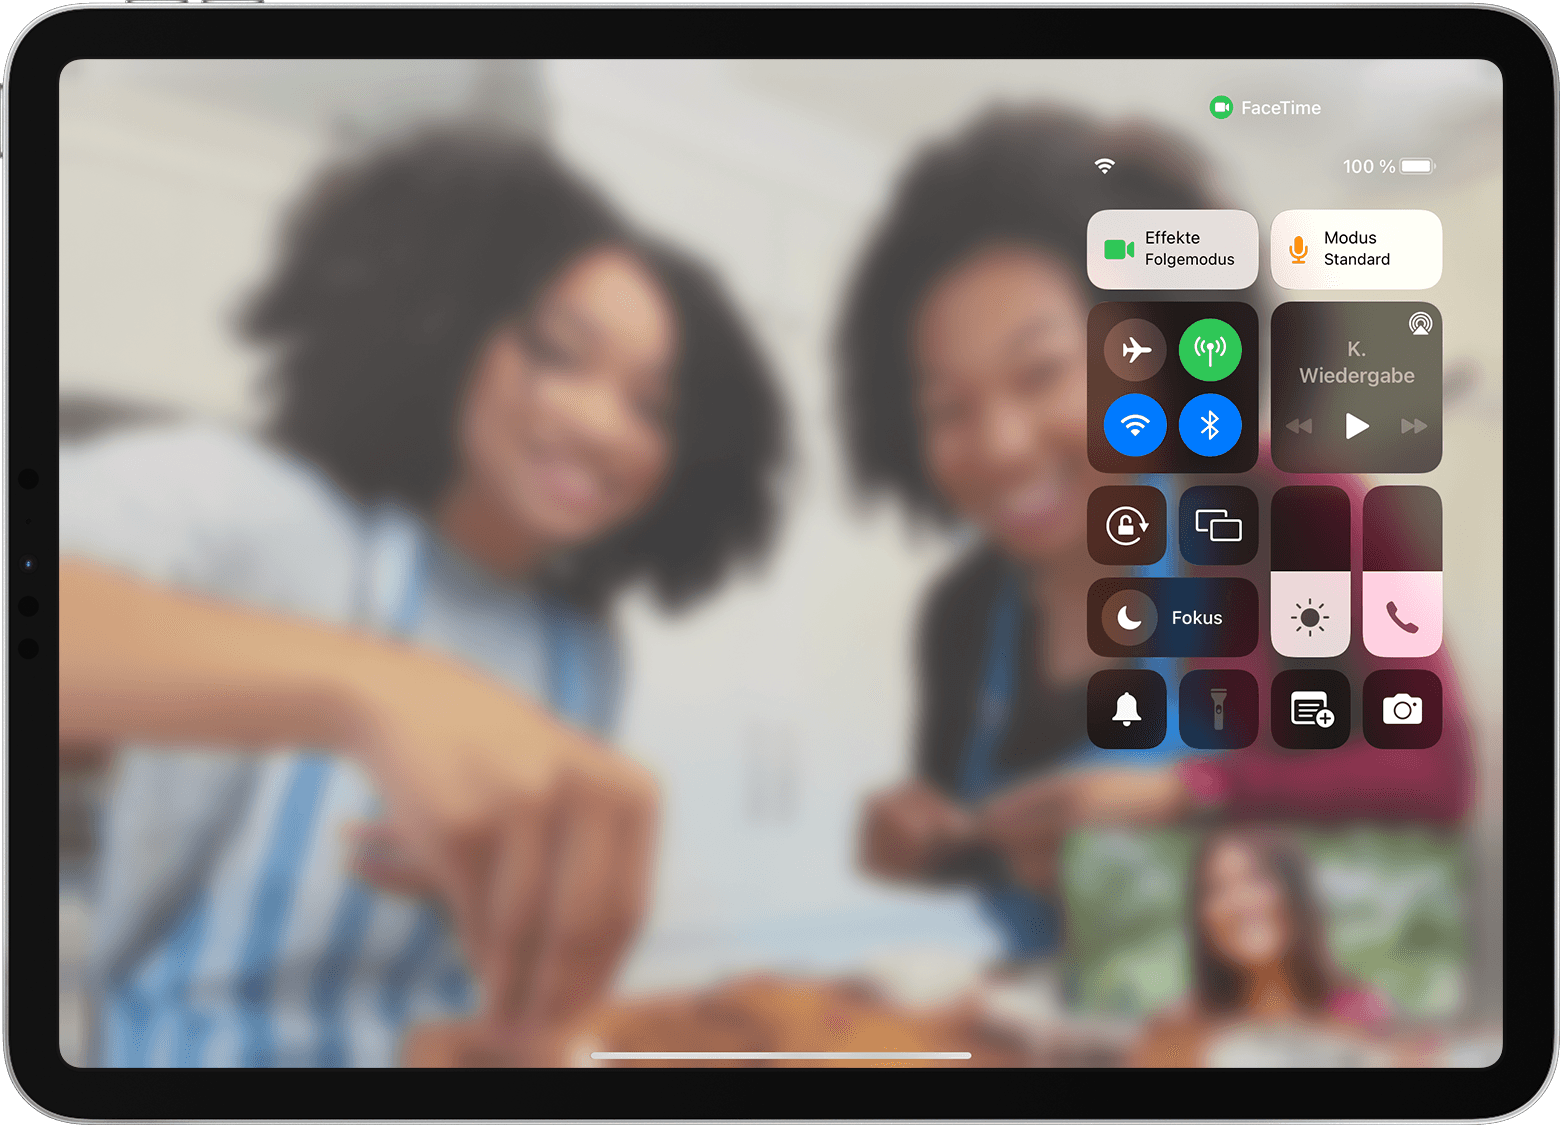 iPad-Display, auf dem ein FaceTime-Anruf mit dem sichtbaren Kontrollzentrum und der Videoeffekte-Taste angezeigt wird